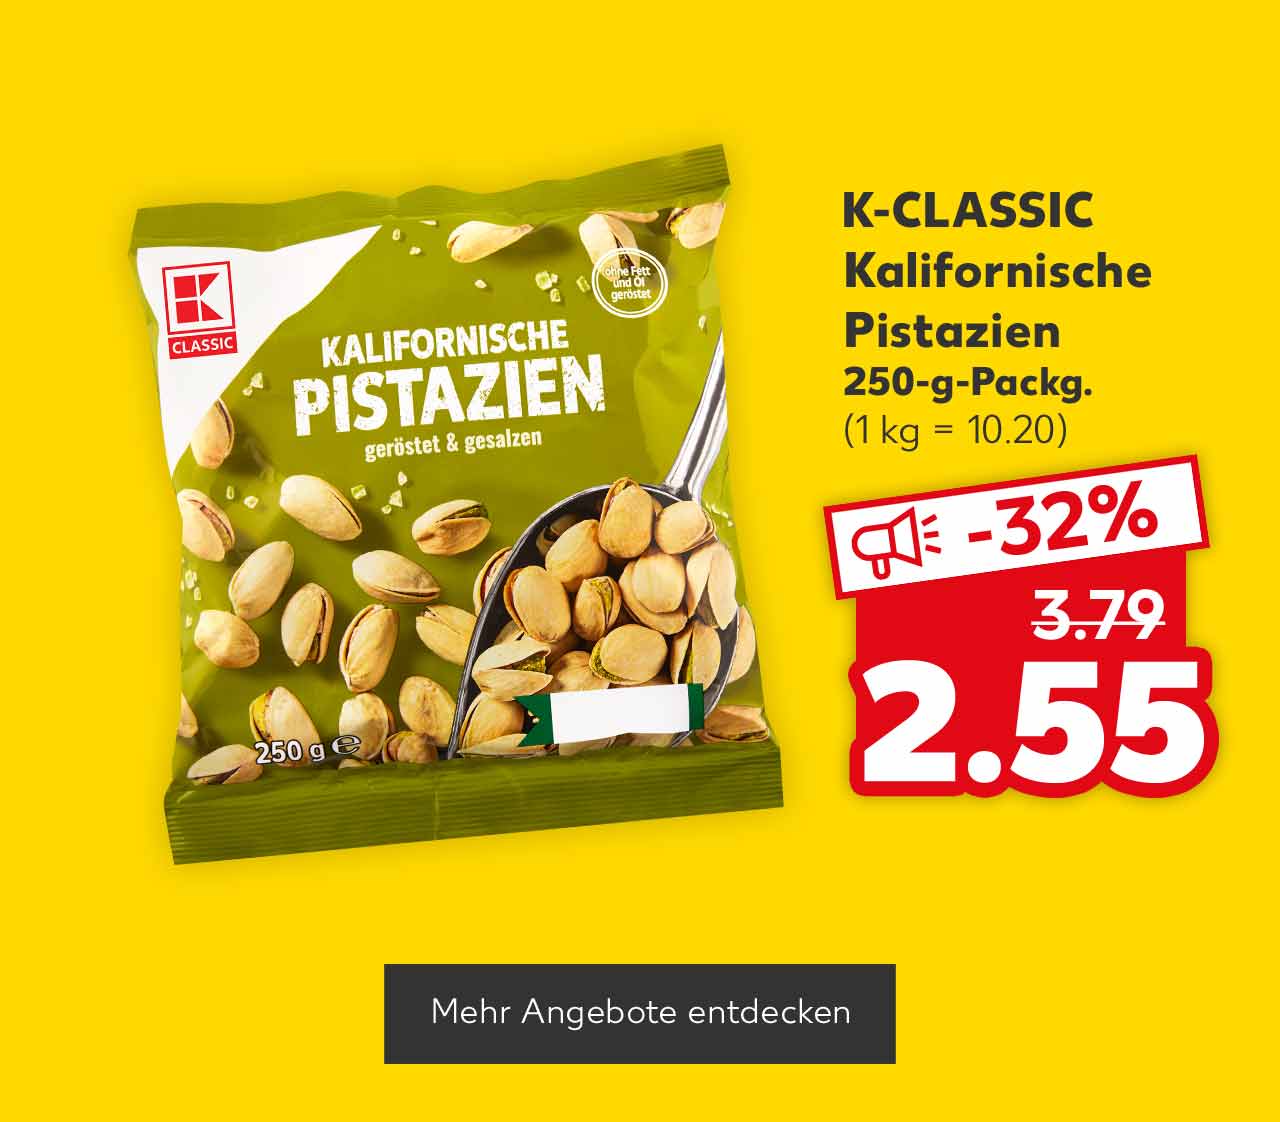 K-CLASSIC Kalifornische Pistazien, 250-g-Packg. für 2.55 Euro (1 kg = 10.20); Button: Mehr Angebote entdecken